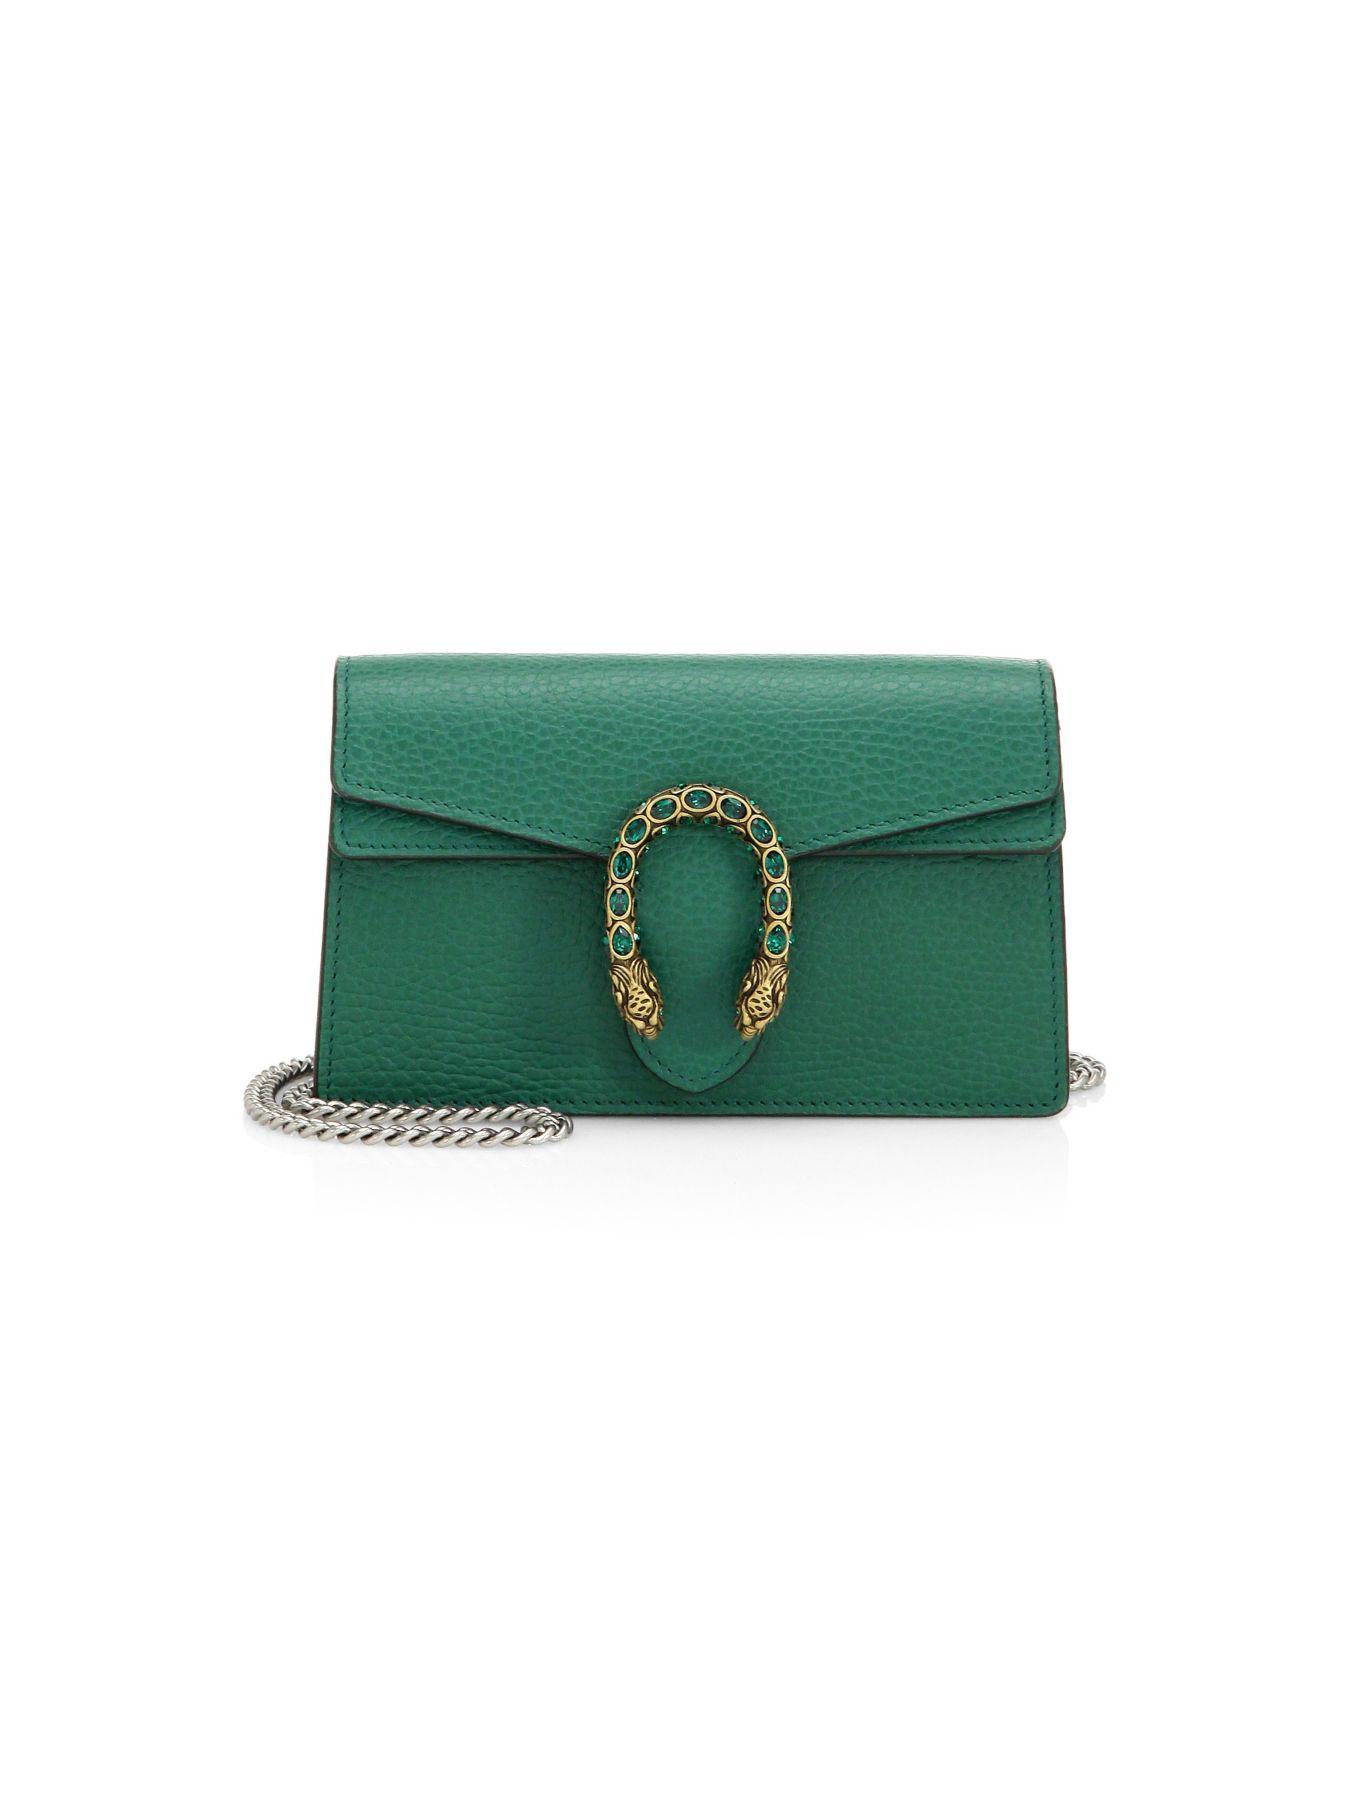 Gucci Dionysus Leather Super Mini Bag in Emerald (Green) - Lyst